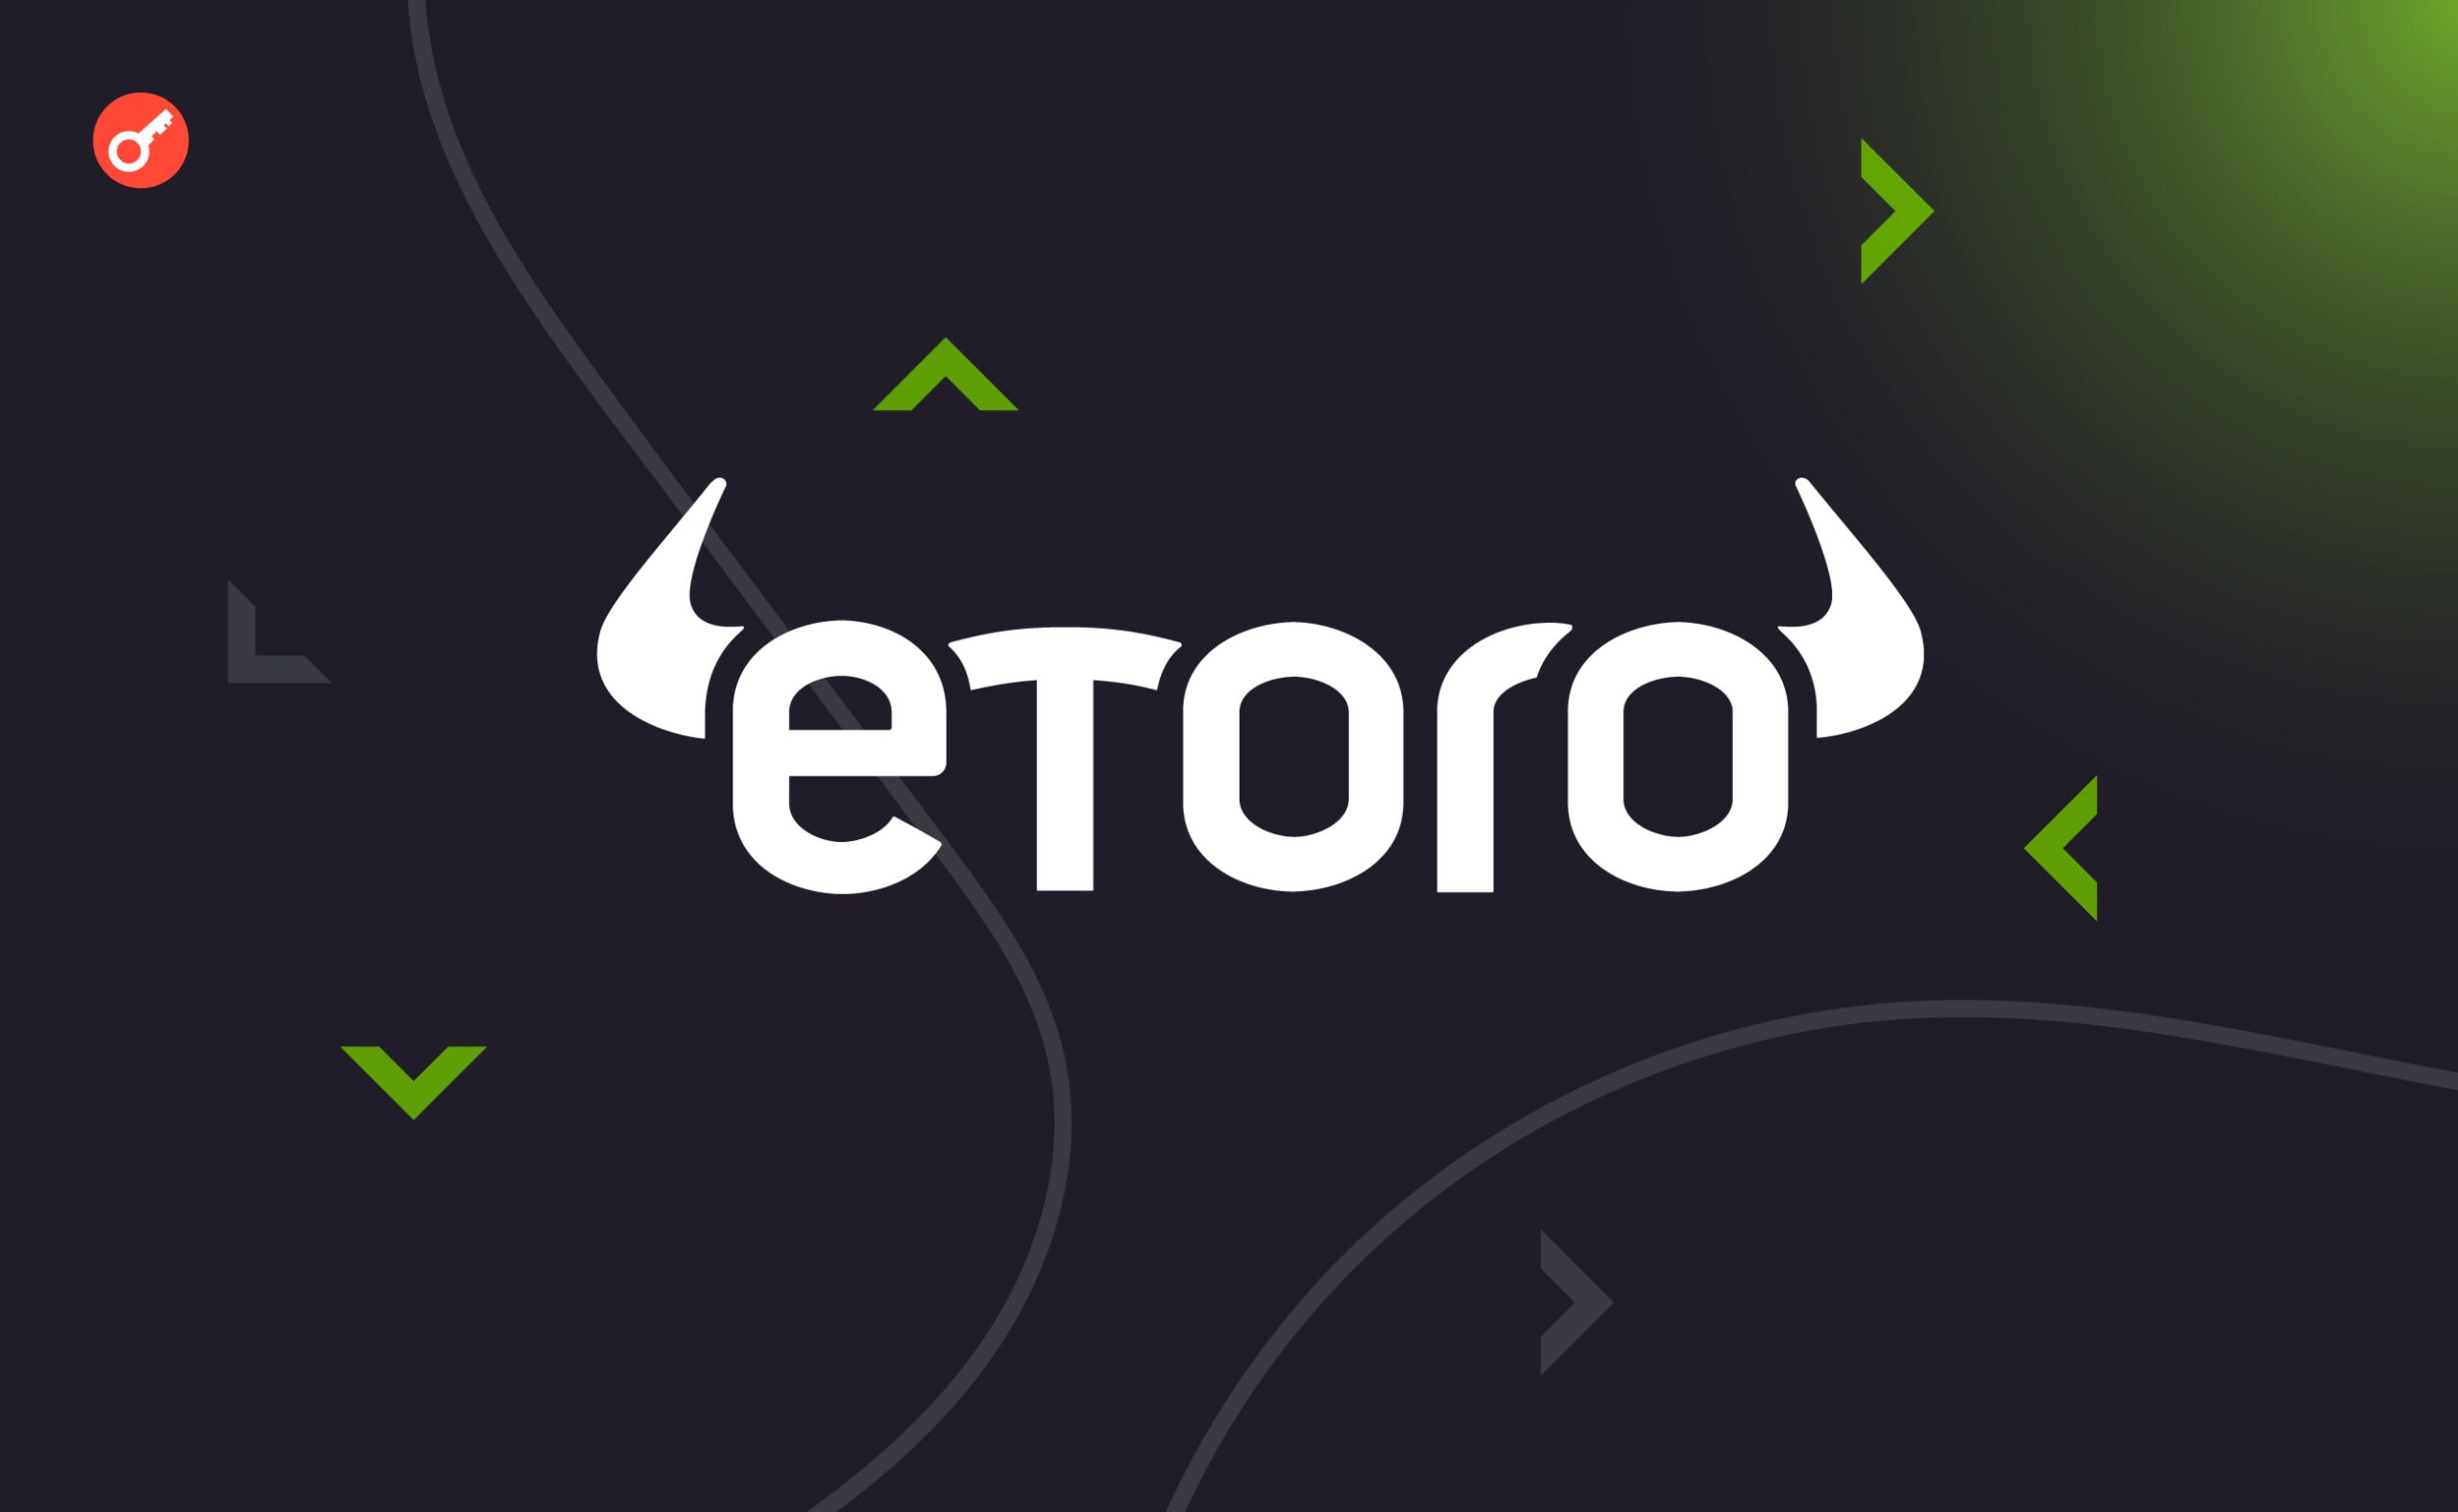 Платформа eToro отримала ліцензію від регулятора Кіпру. Головний колаж новини.